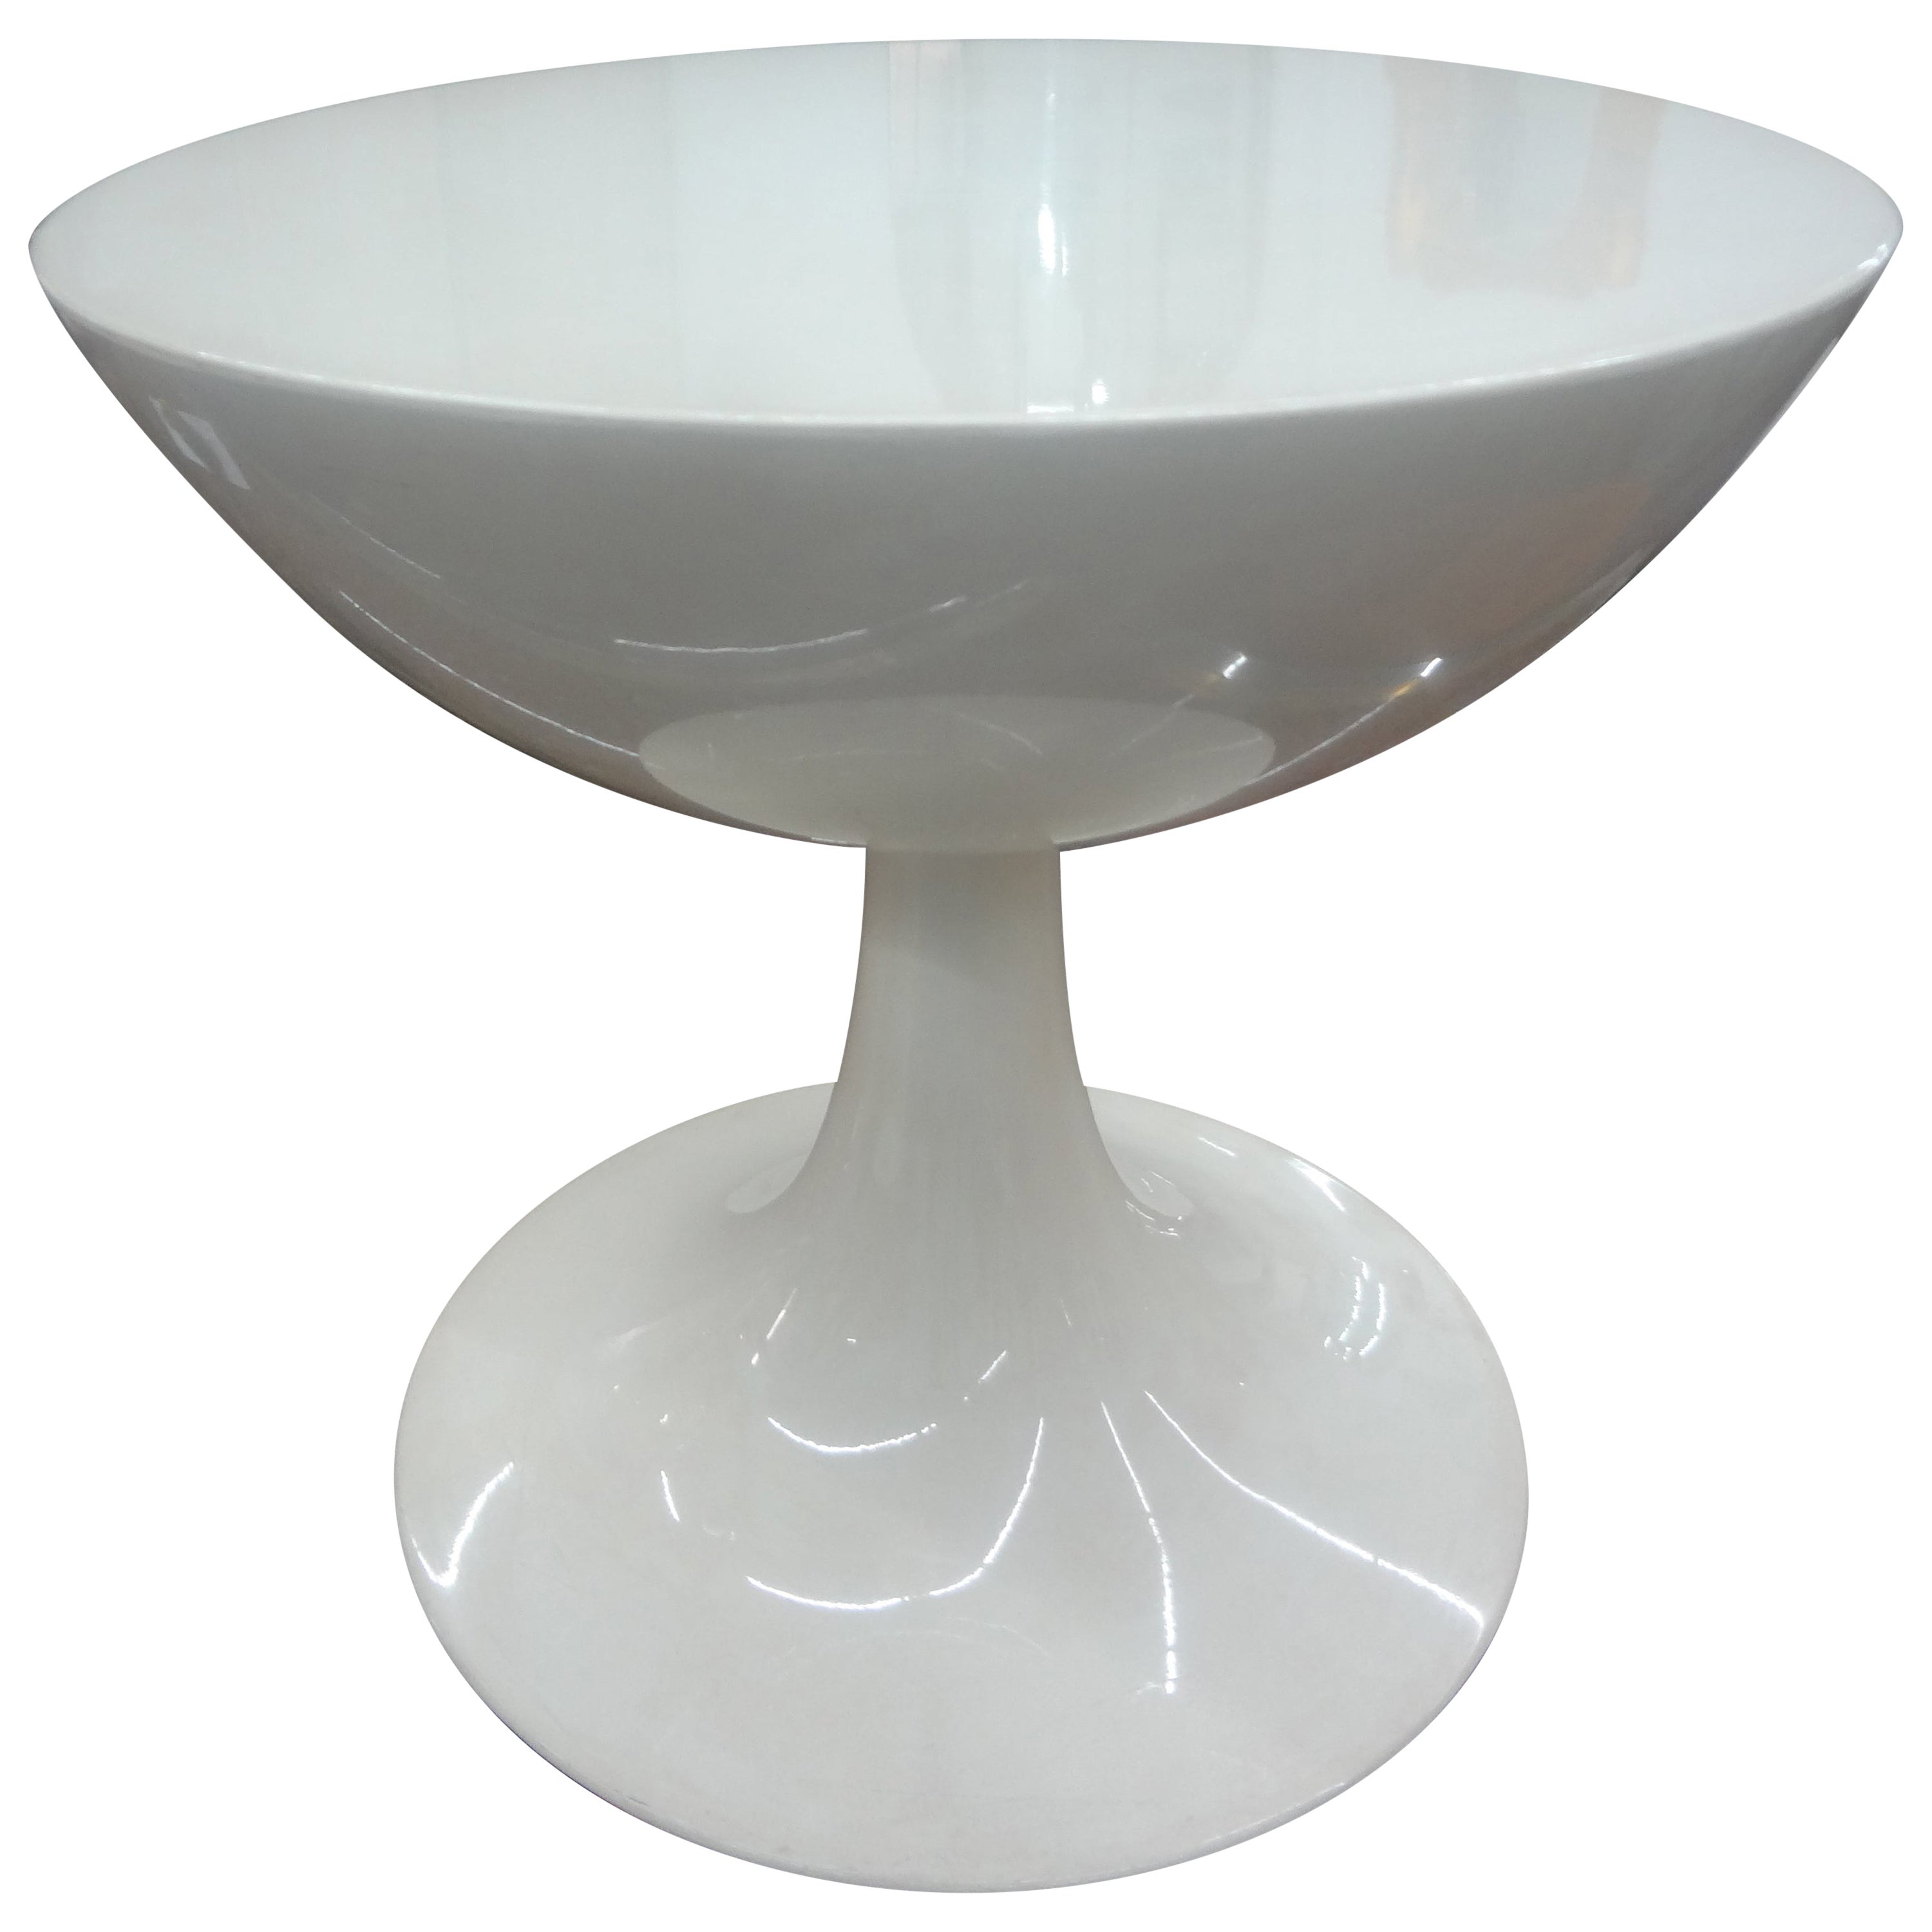 Danish Modern Fiberglass Tulip Table By Oddense Maskinsnedkeri For Sale